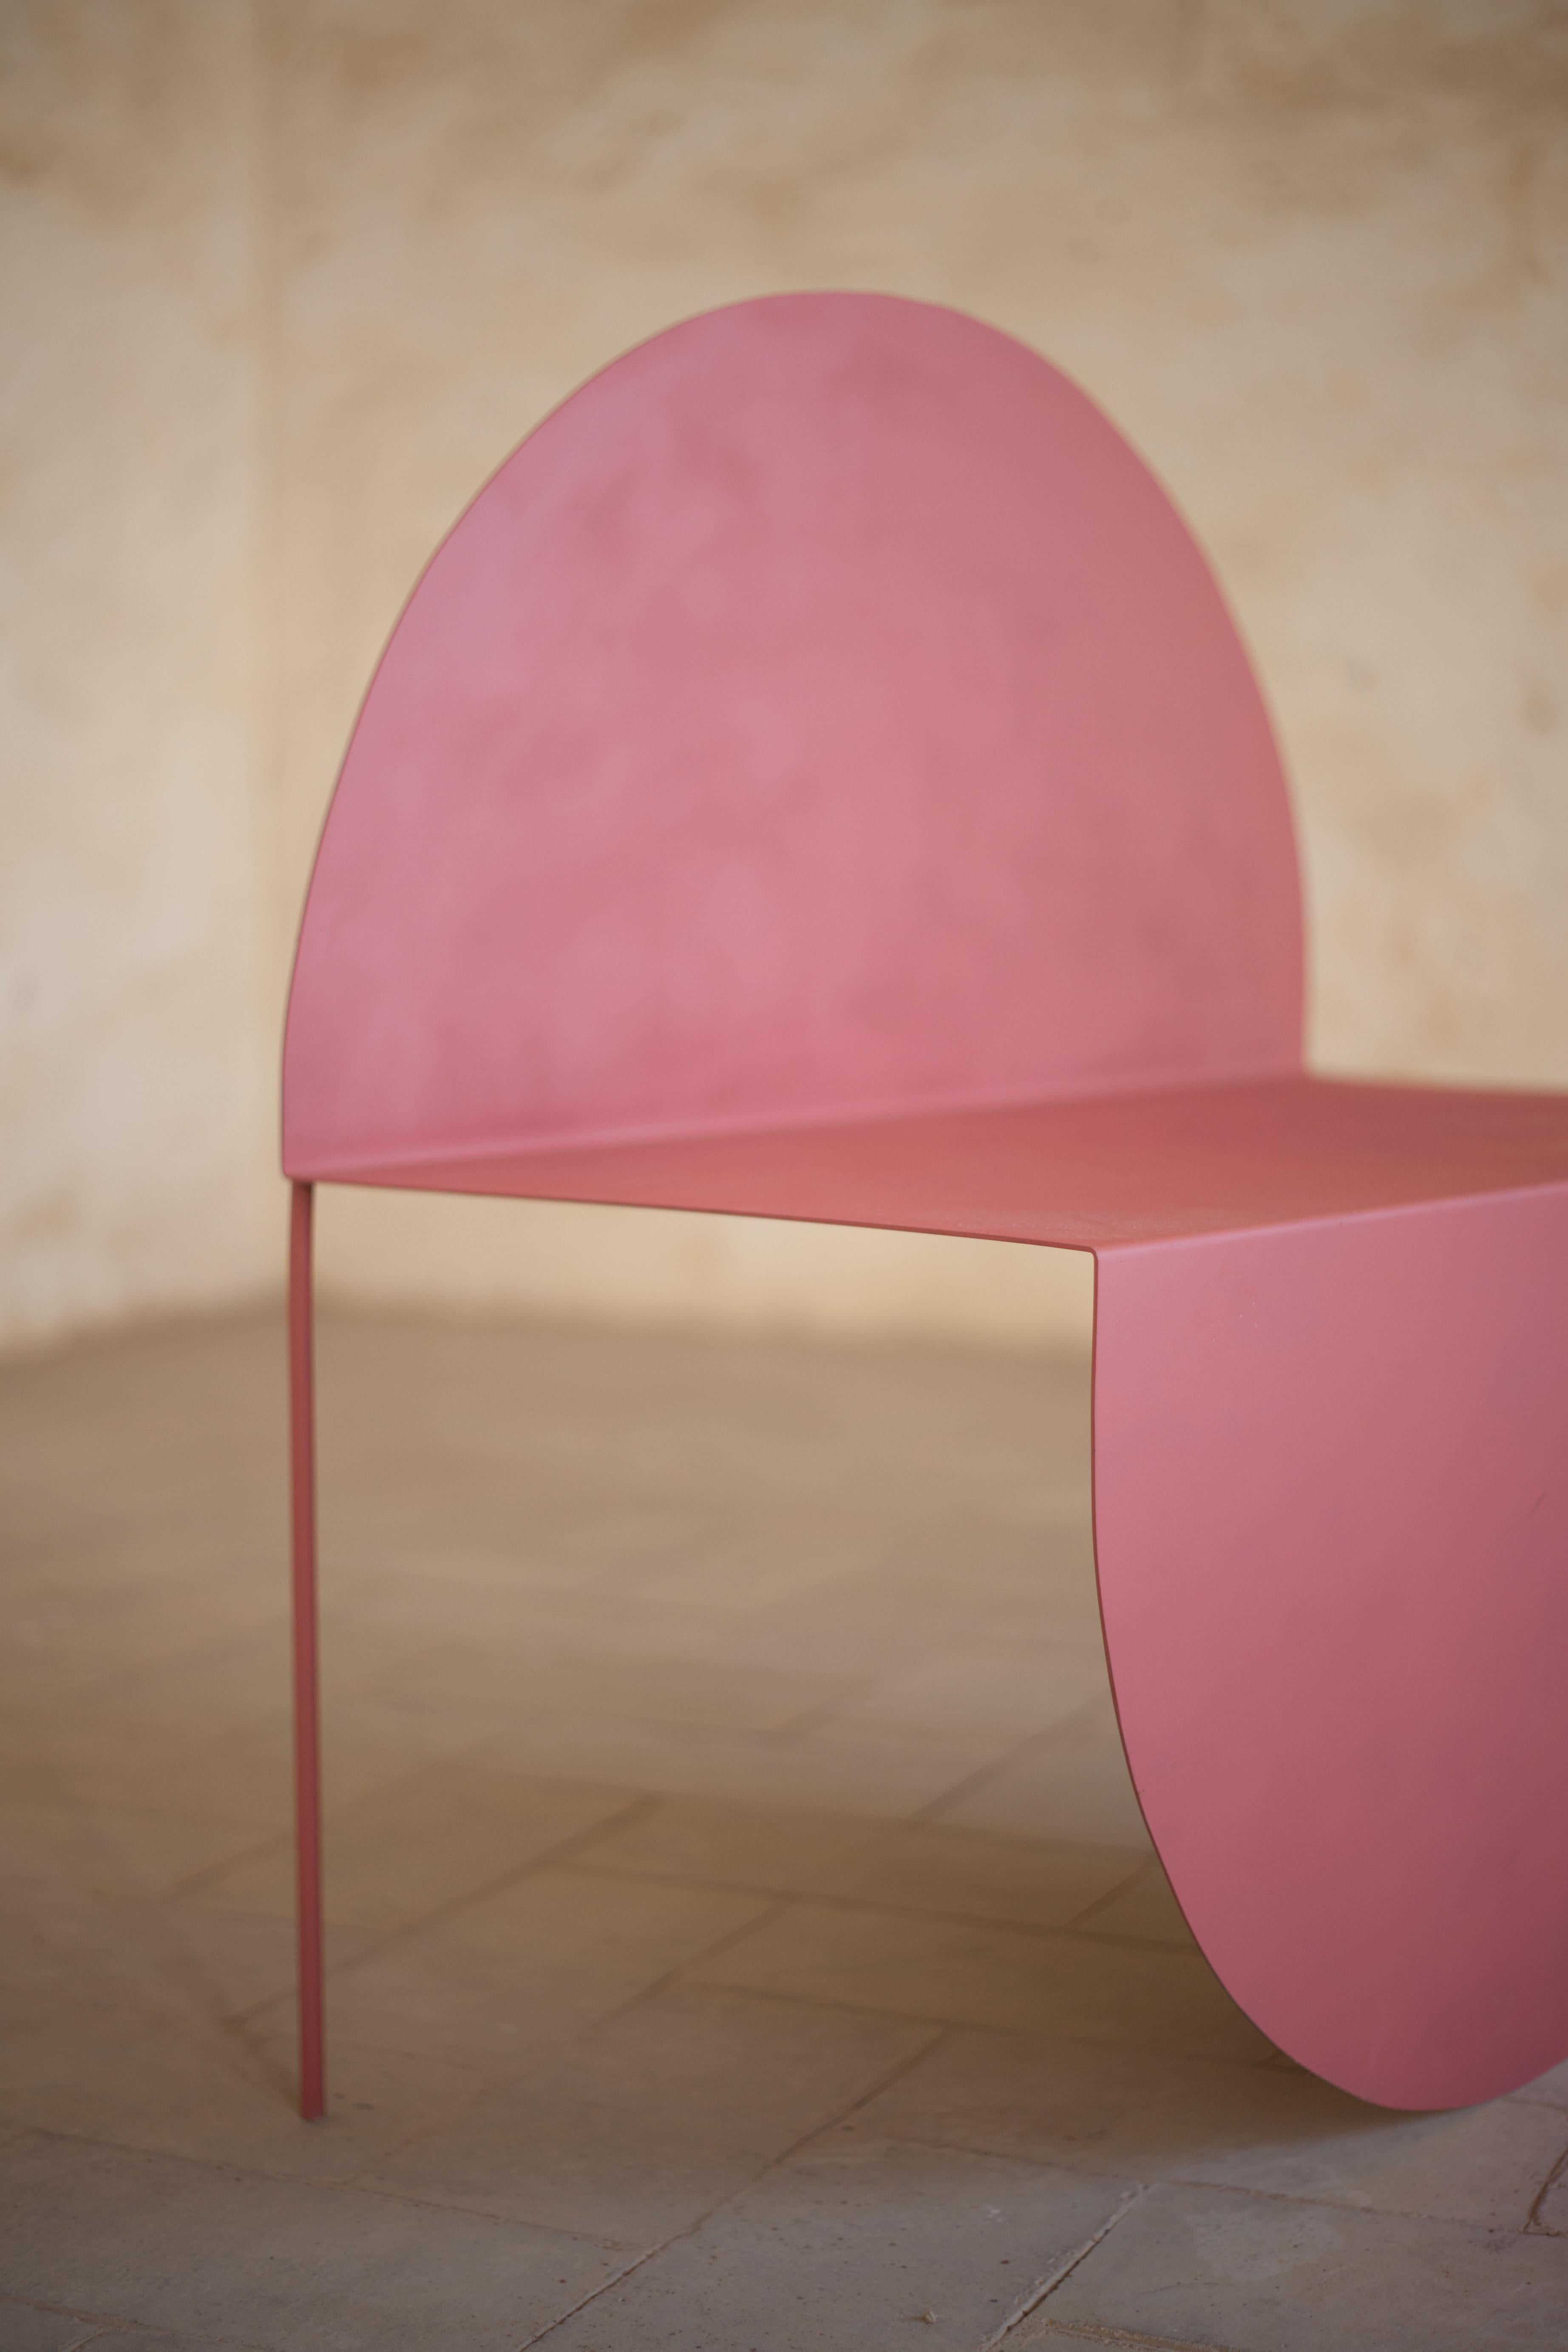 La Redonda ist ein Stuhl, der mit einer rein zweidimensionalen geometrischen Figur, dem Kreis, kokettiert. Diese perfekte Form wird nach dem Schneiden auf einer Stahlplatte geformt und behält ihre Reinheit bei ihrem Schritt in die drei Dimensionen.